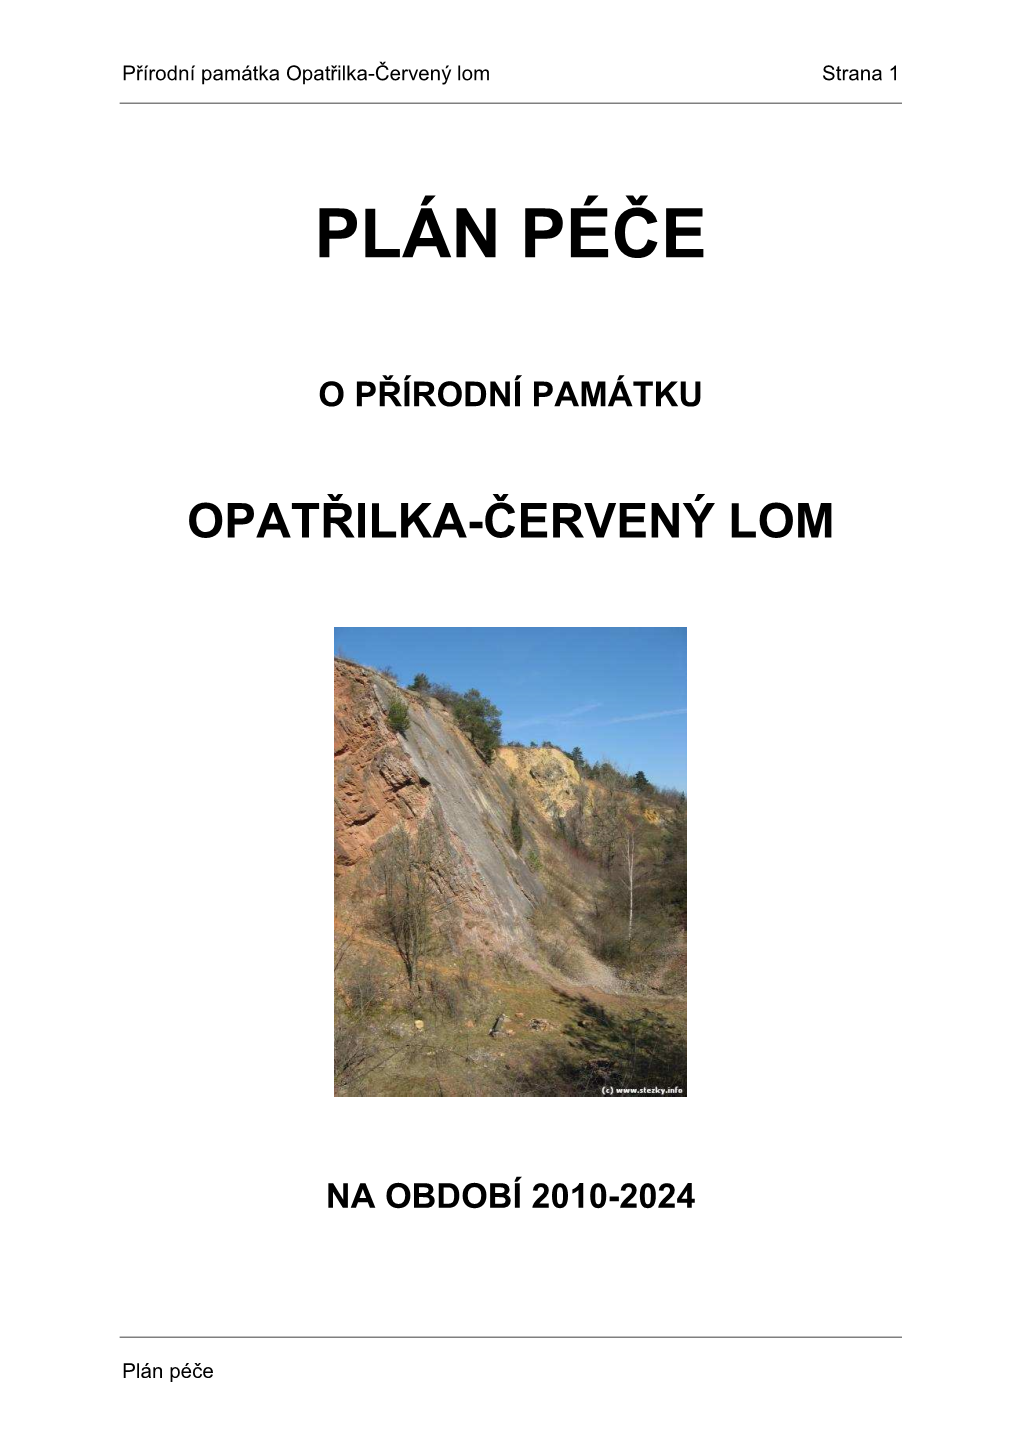 Plánpéče PP Opatřilka-Červený Lom 2010 2024